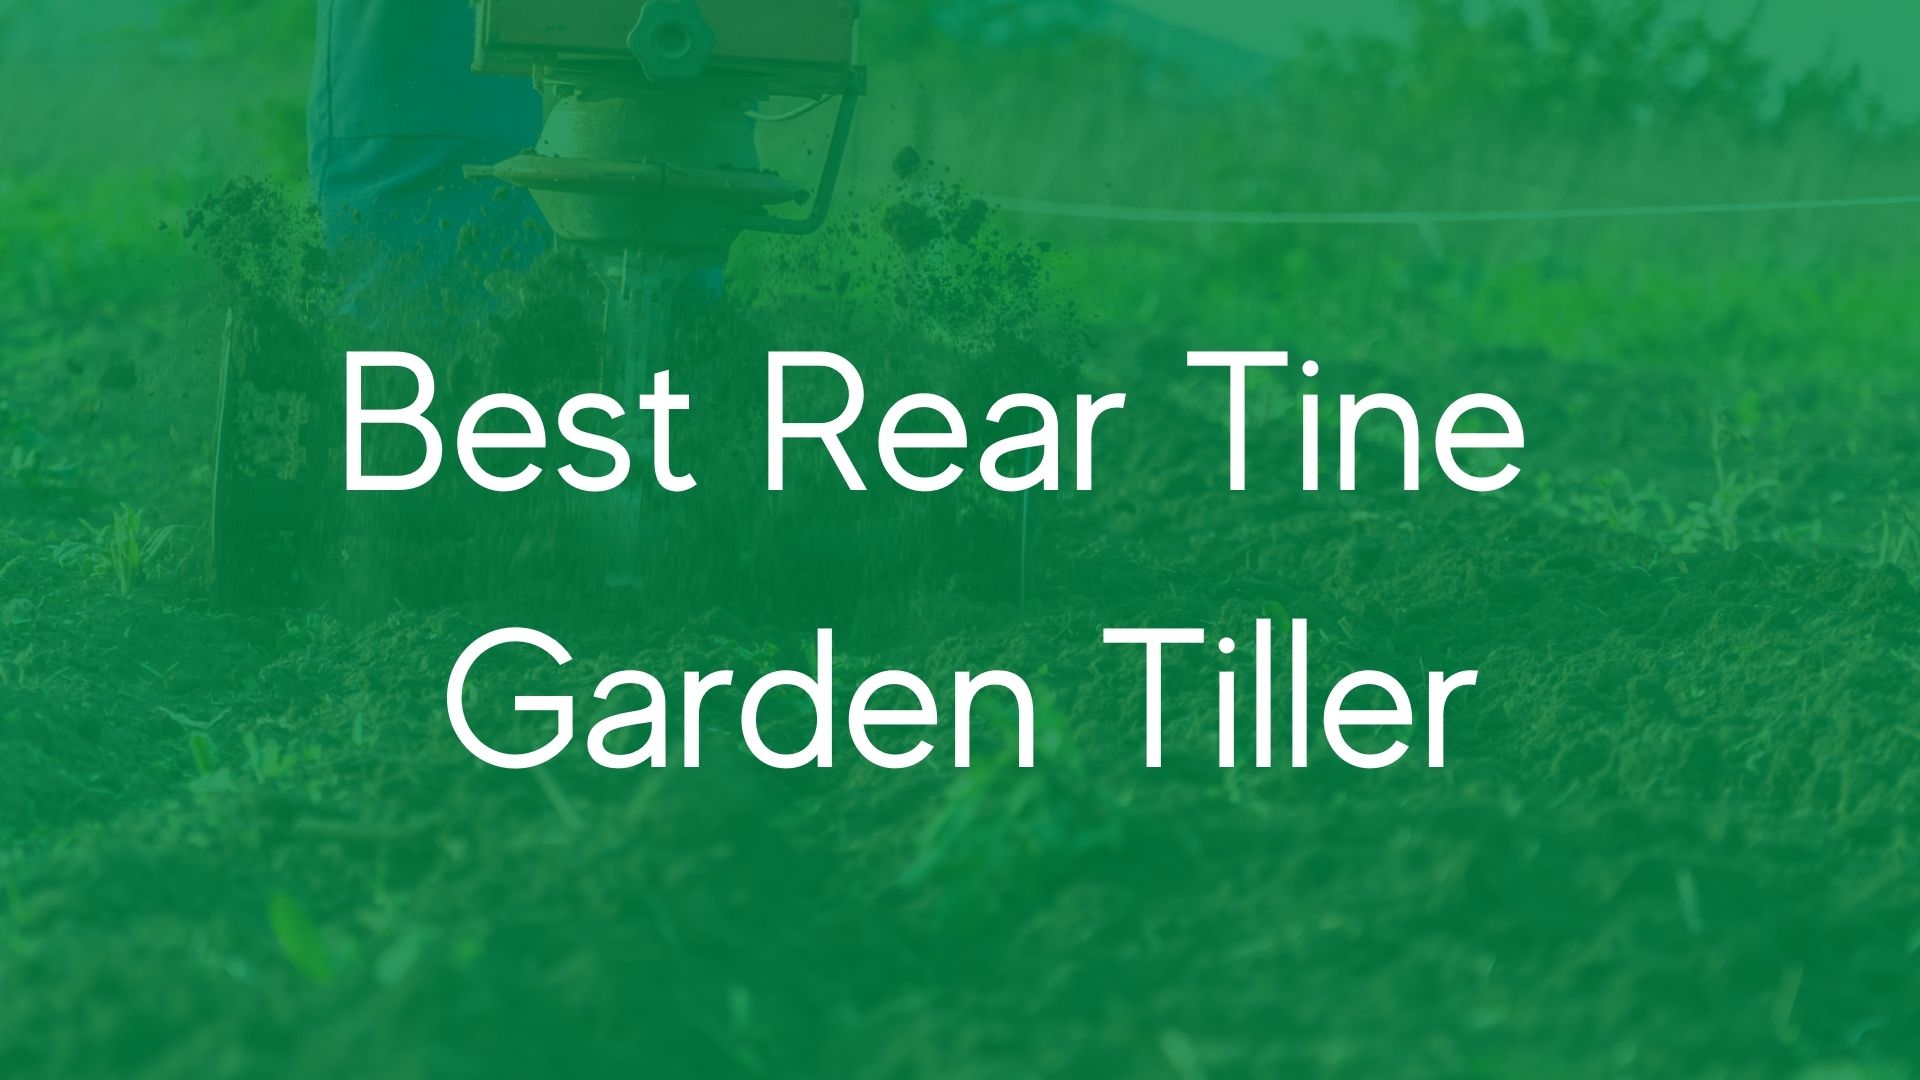 Best Rear Tine Garden Tiller for 2022